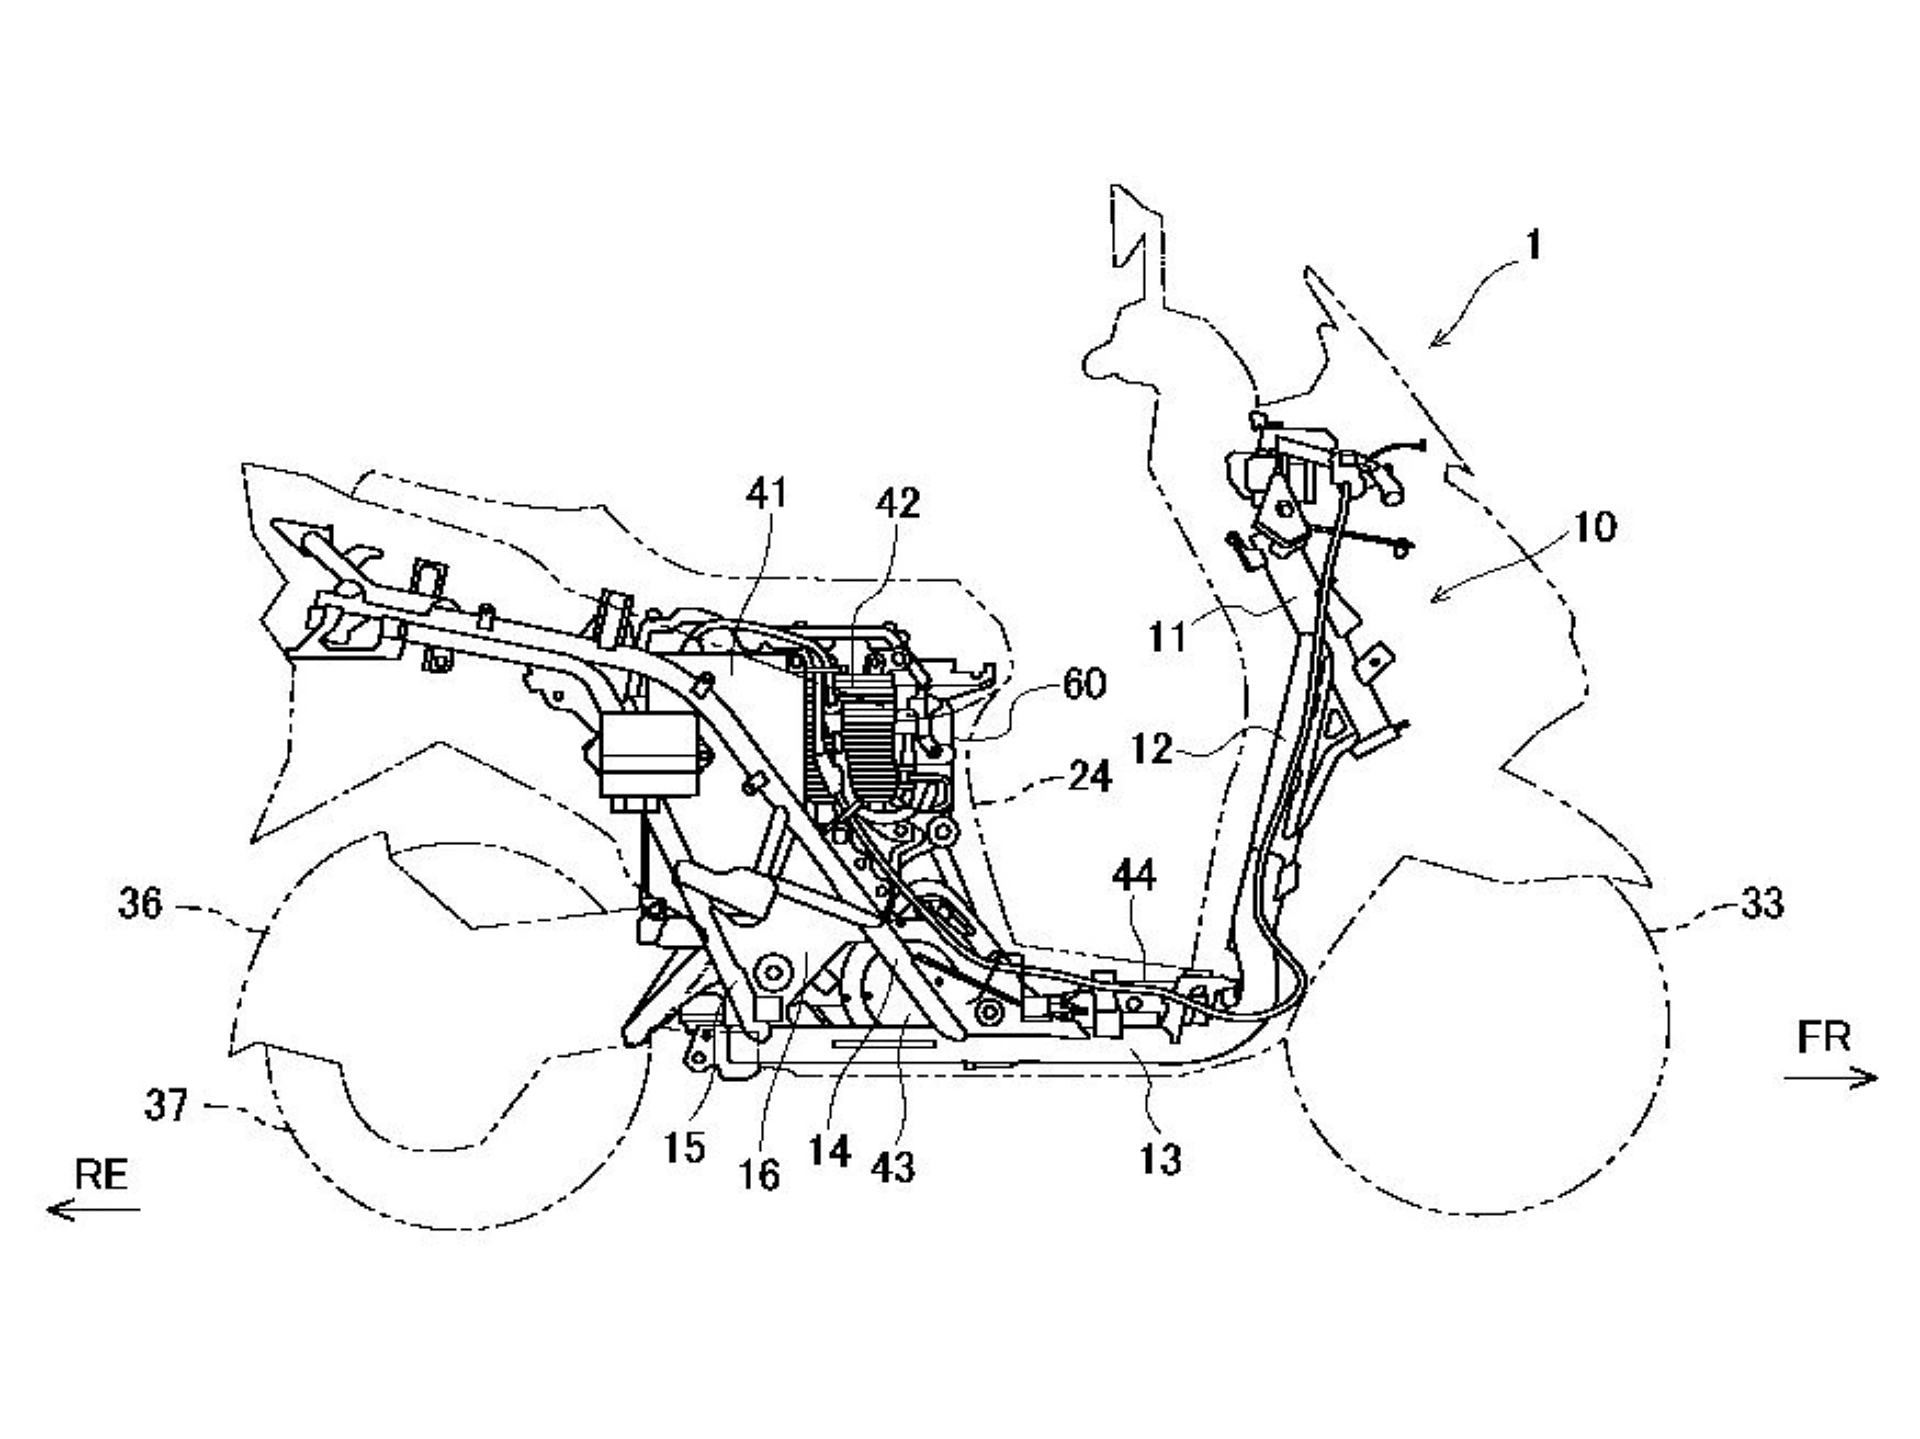 Imagen relativa a la patente efectuada por Suzuki.